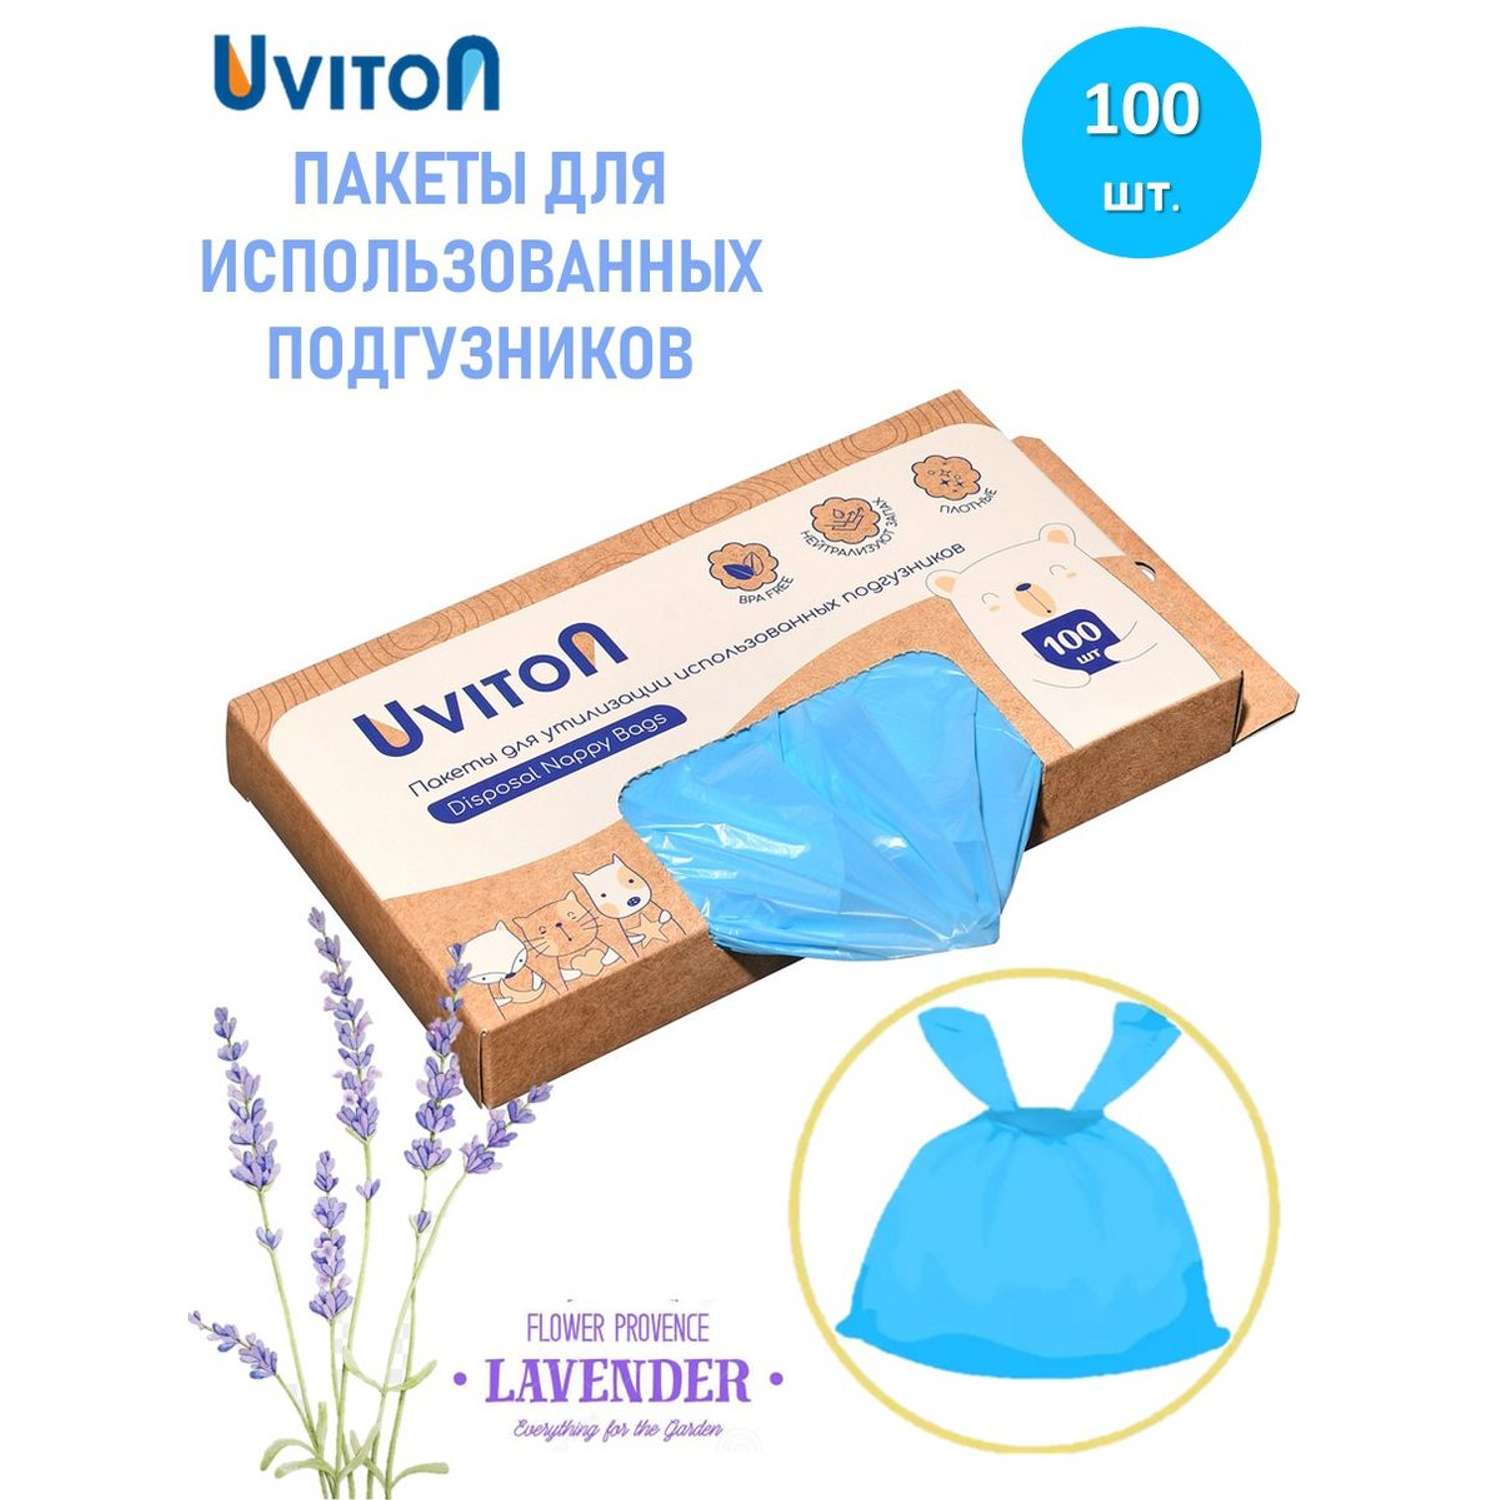 Пакеты для утилизации Uviton использованных подгузников 100 шт - фото 1